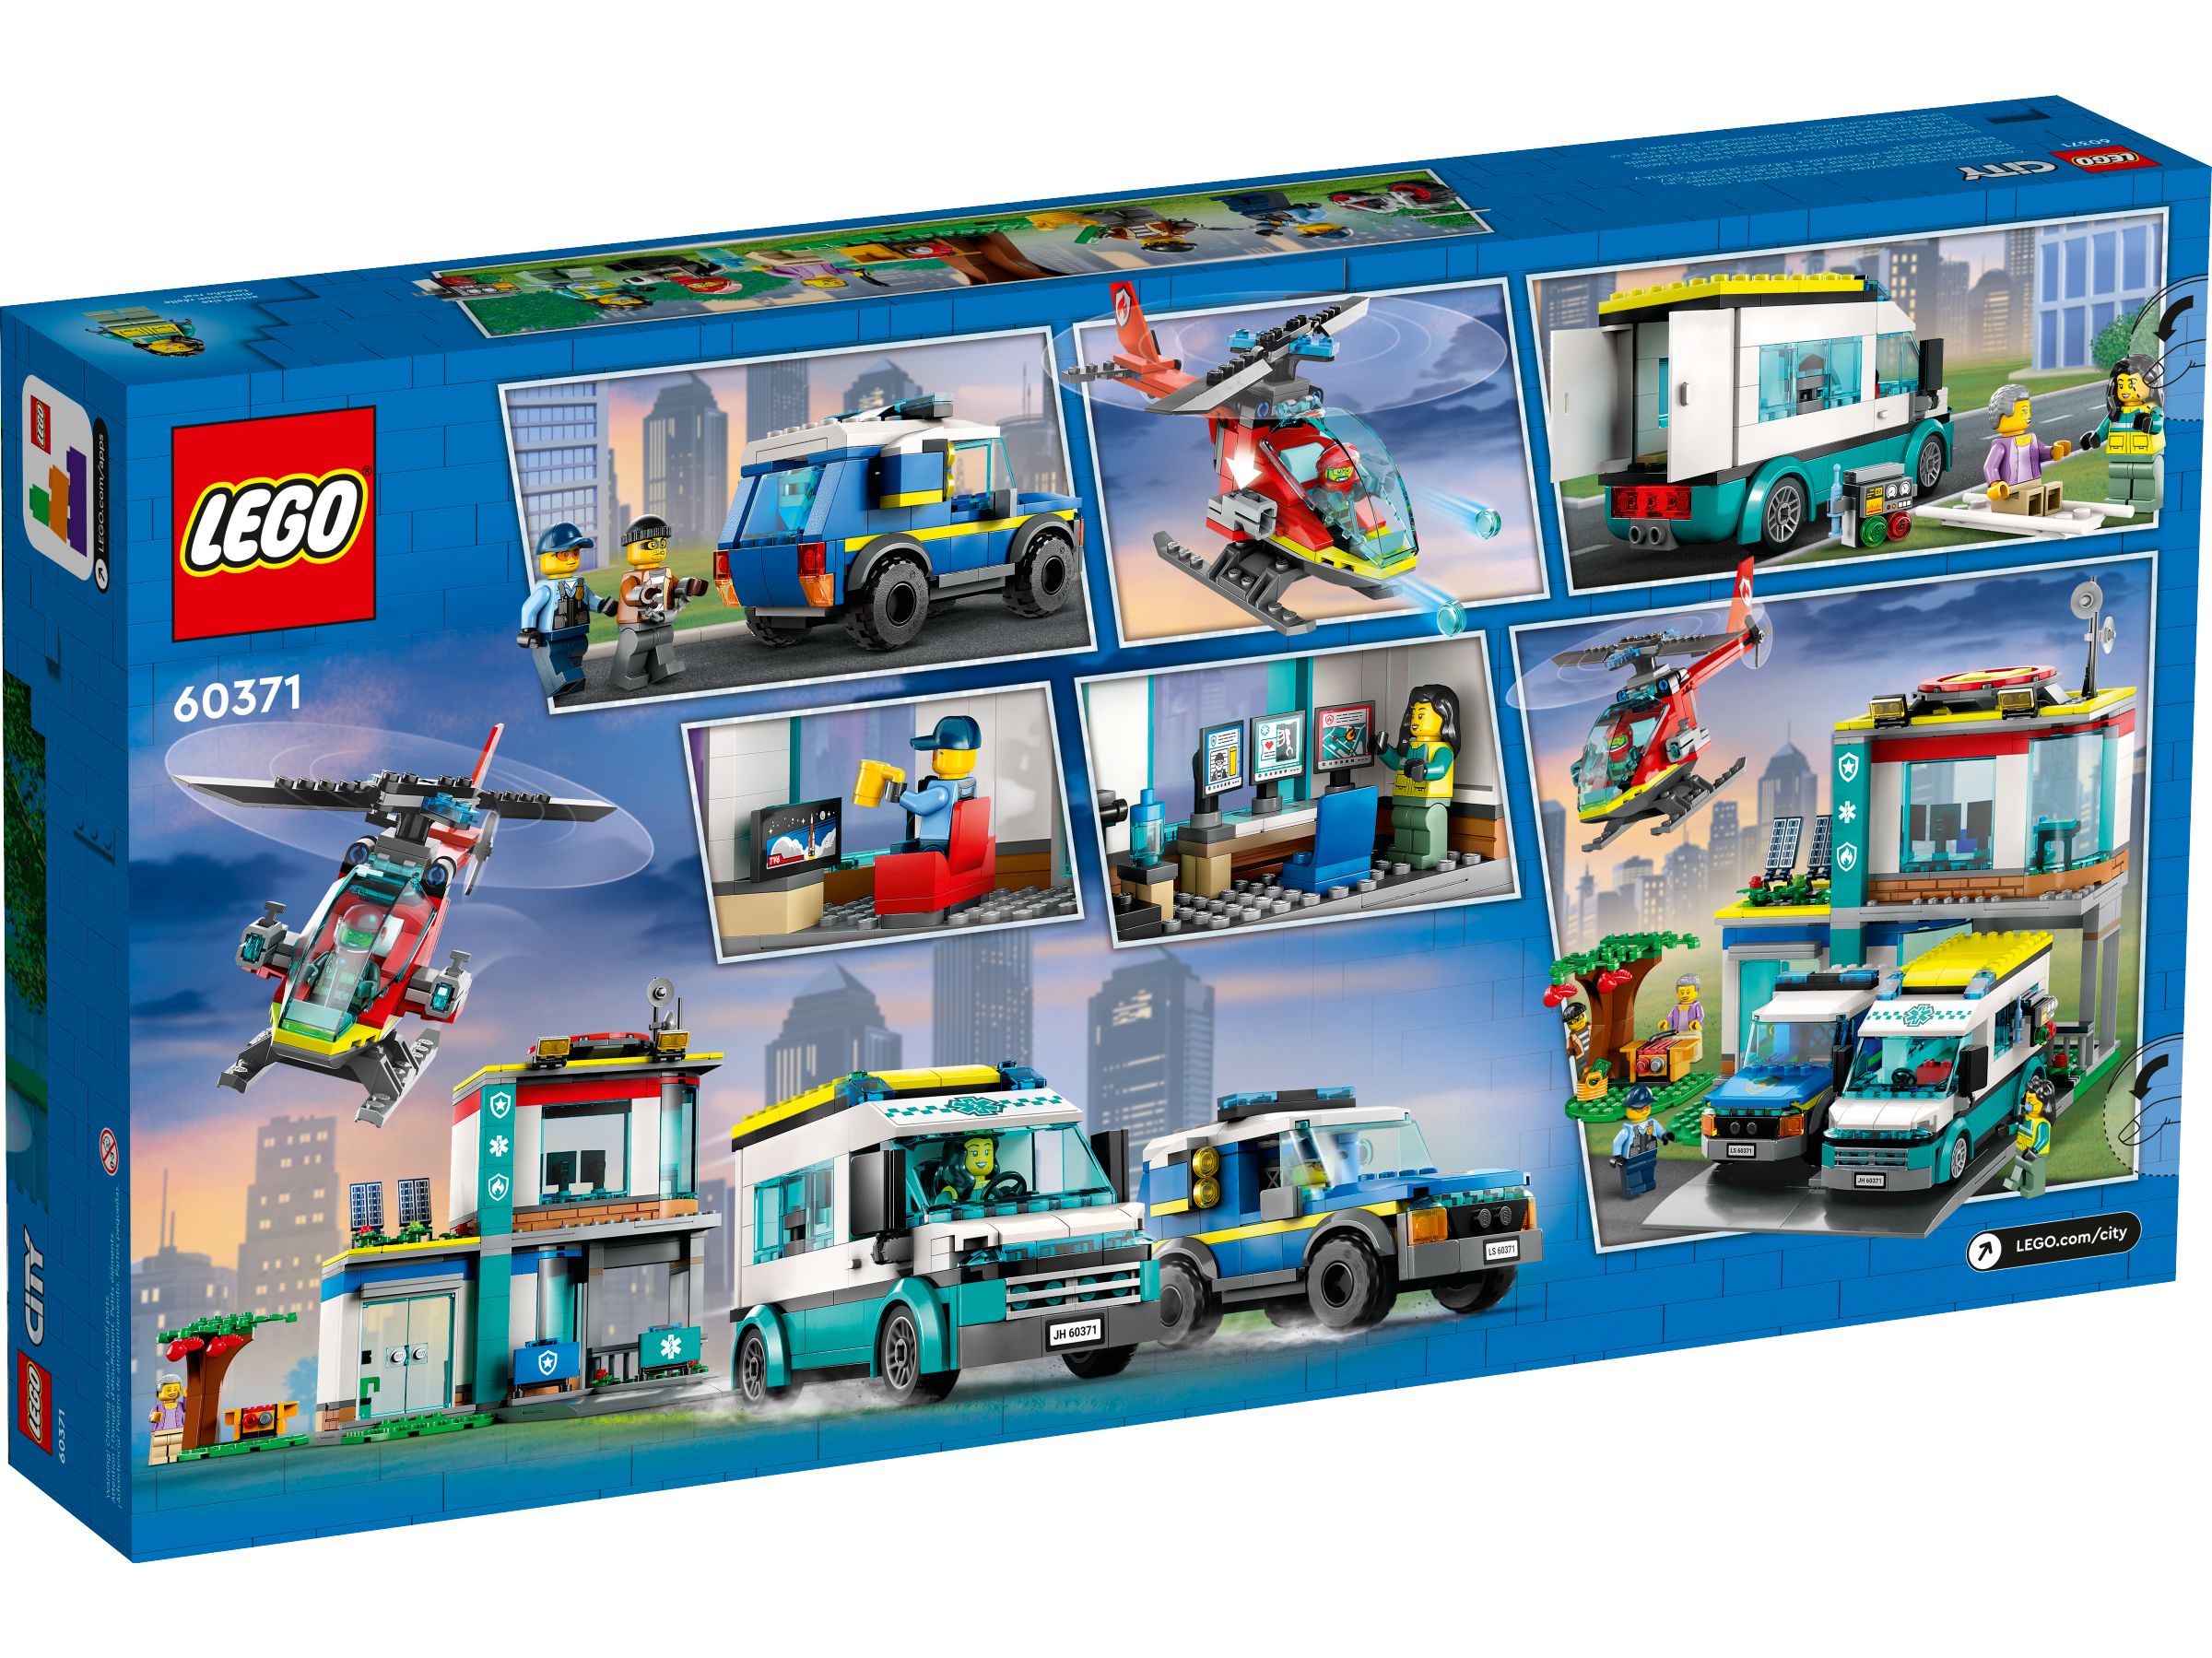 LEGO City 60371 Hauptquartier der Rettungsfahrzeuge LEGO_60371_alt9.jpg